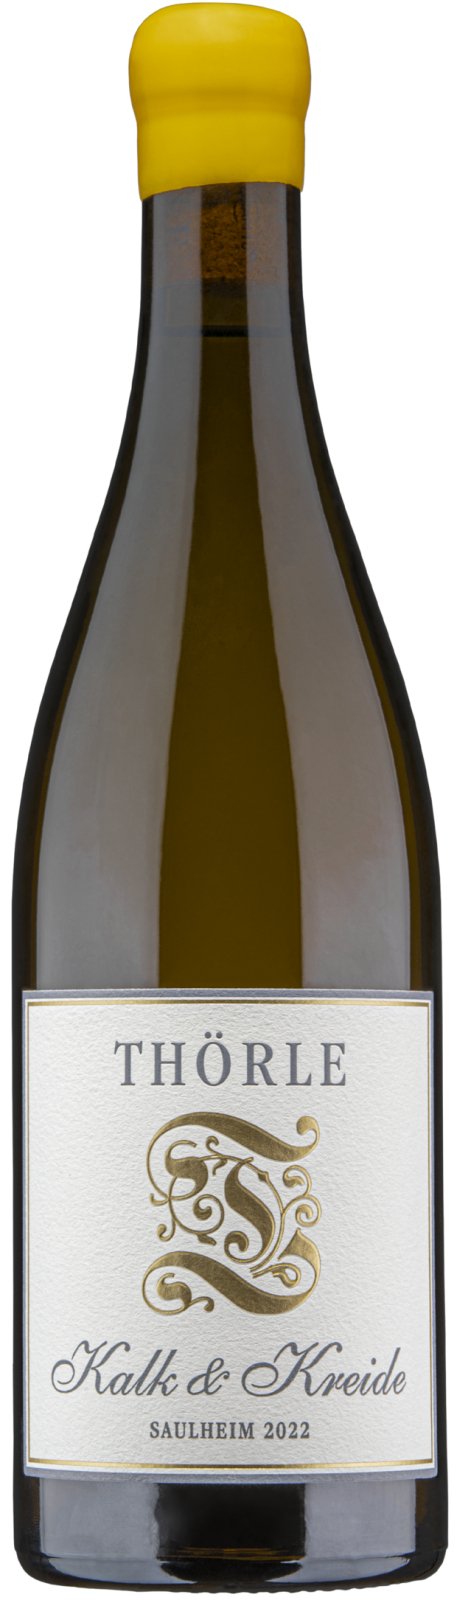 2022 Thörle Kalk & Kreide Chardonnay - Blanc Wine Caviste Pinot